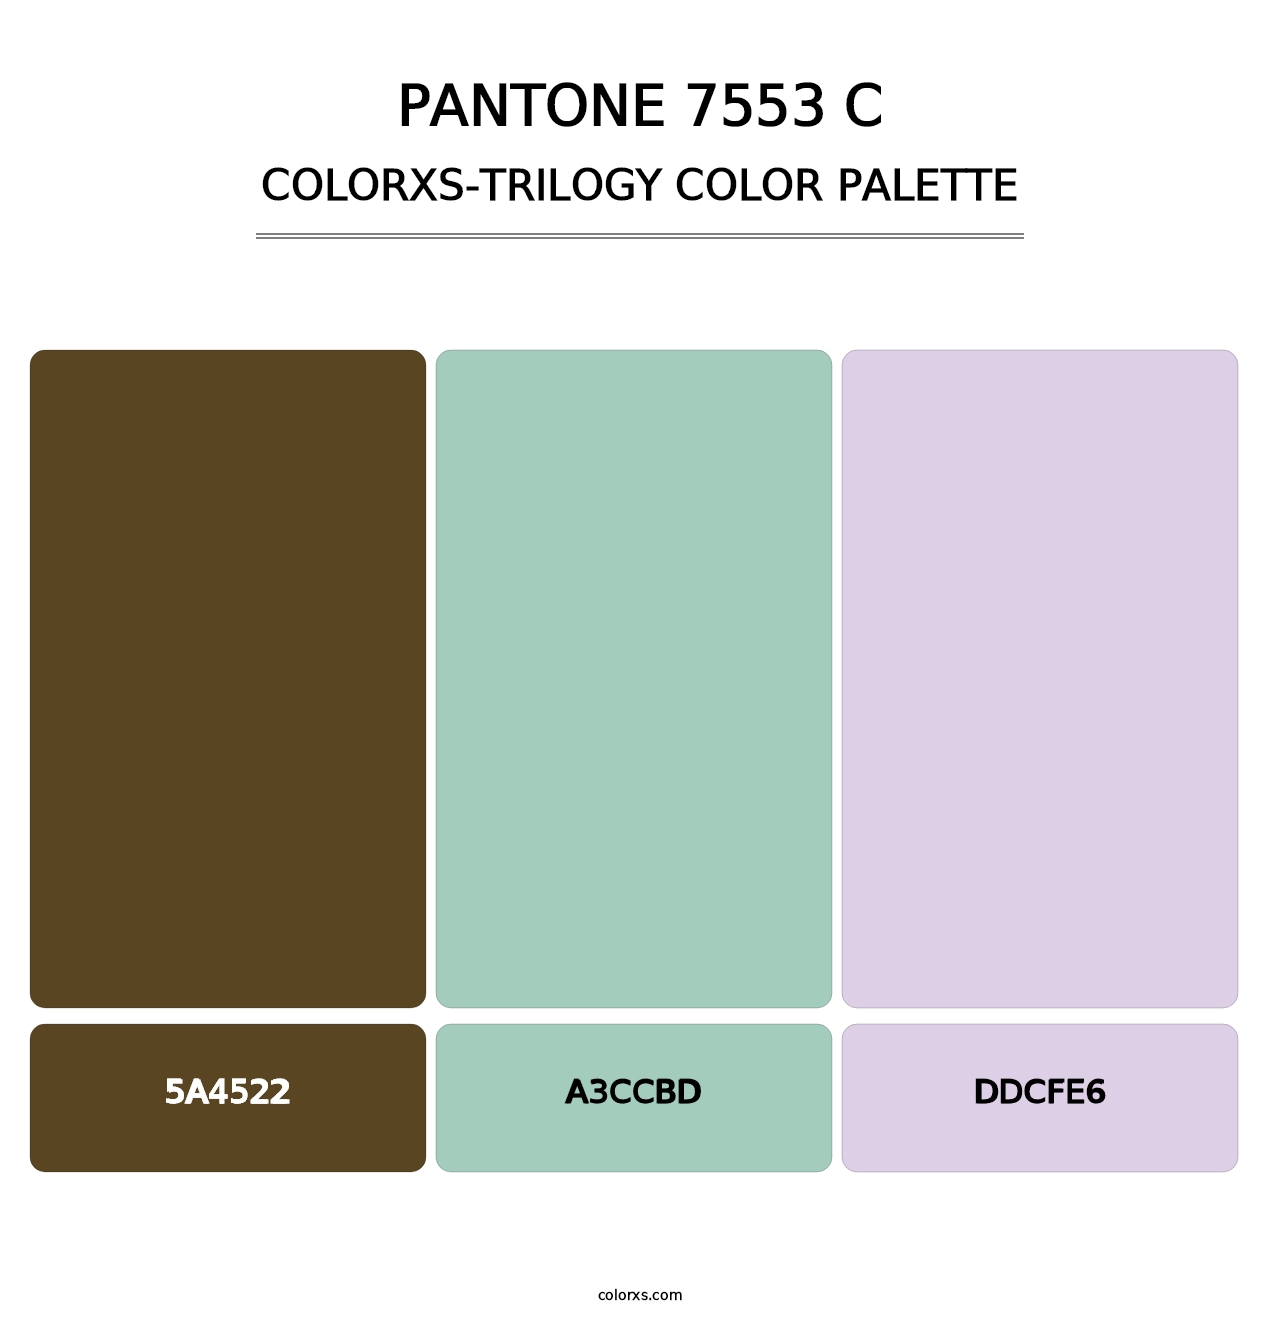 PANTONE 7553 C - Colorxs Trilogy Palette